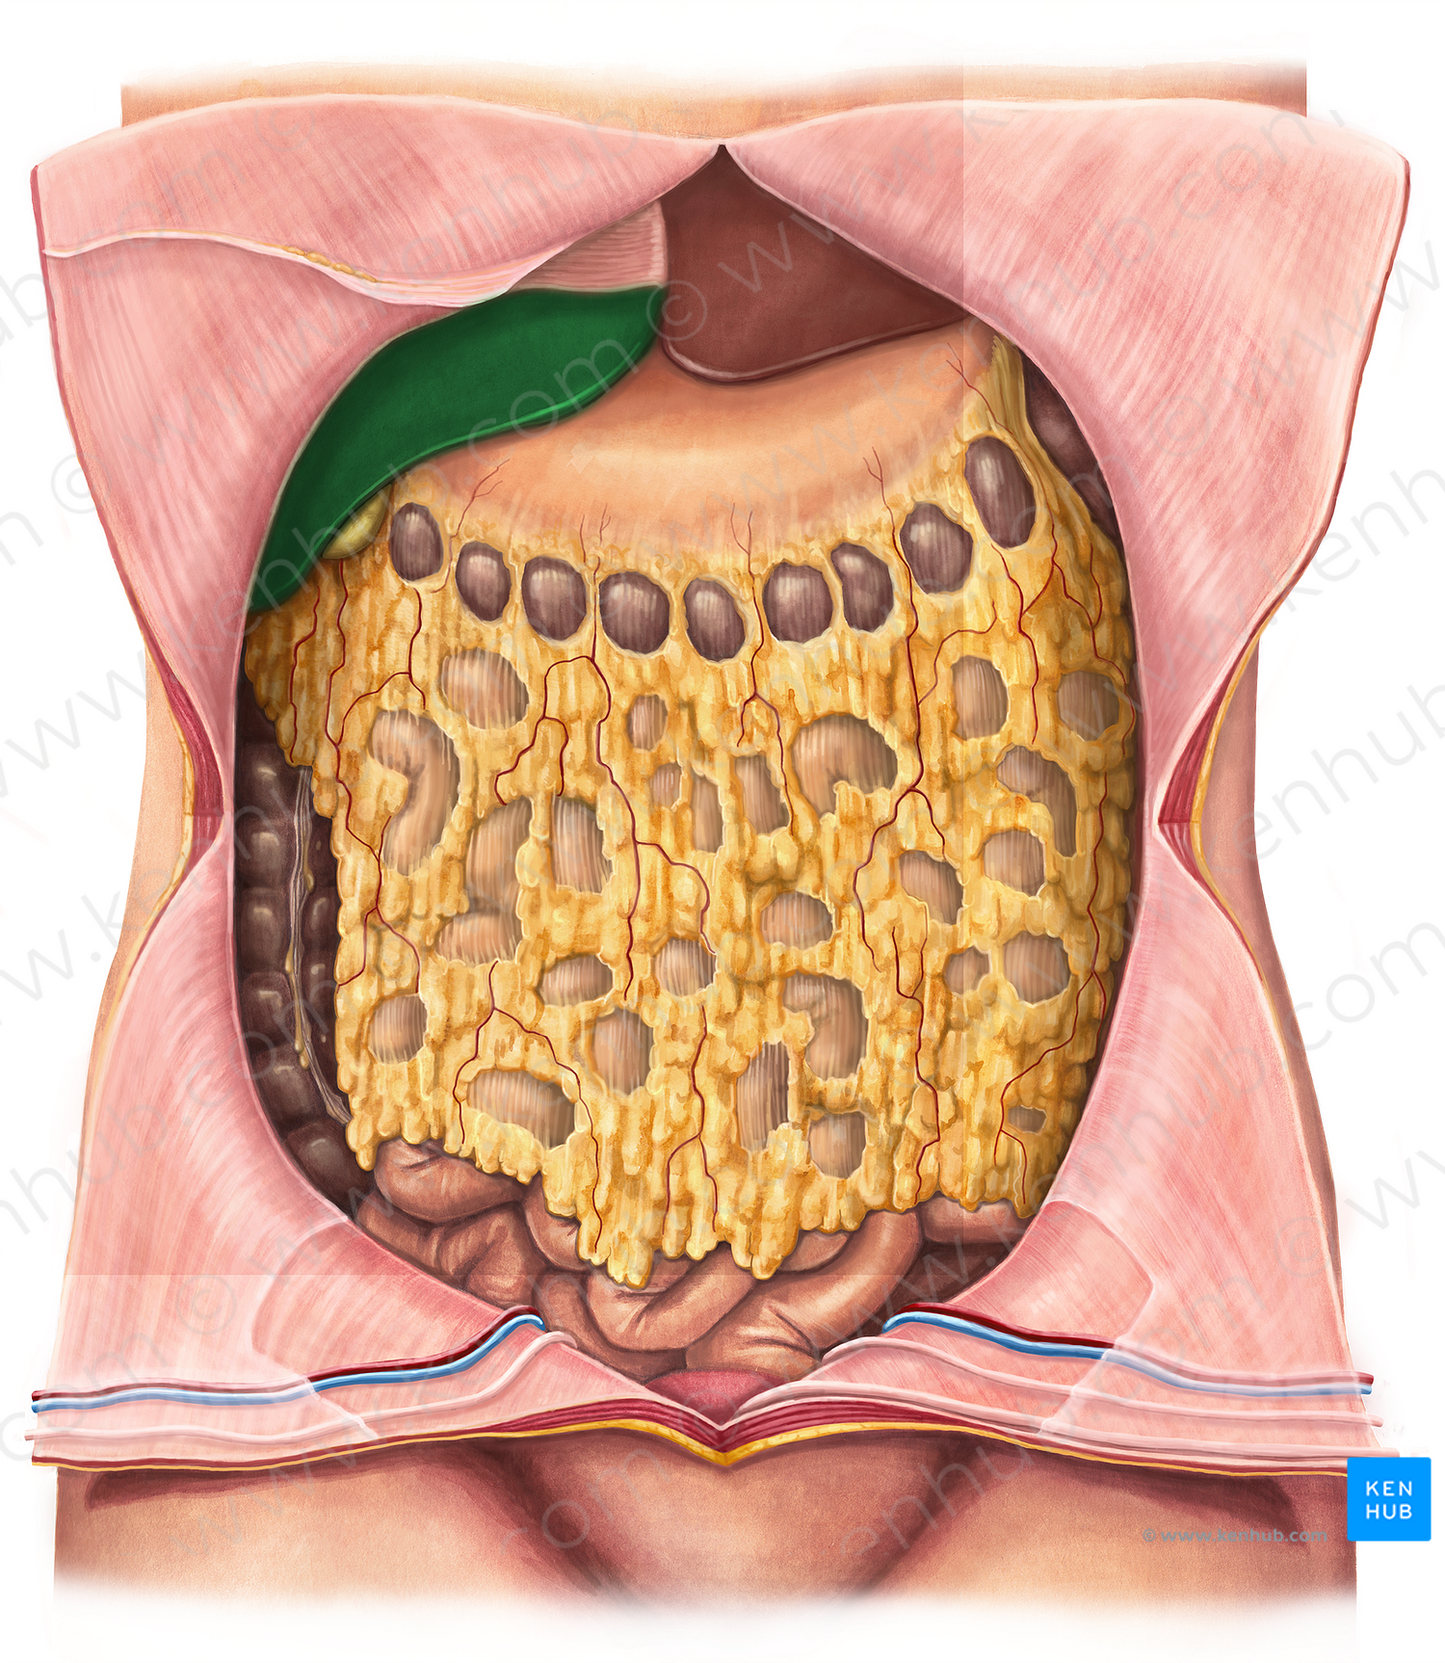 Right lobe of liver (#4791)